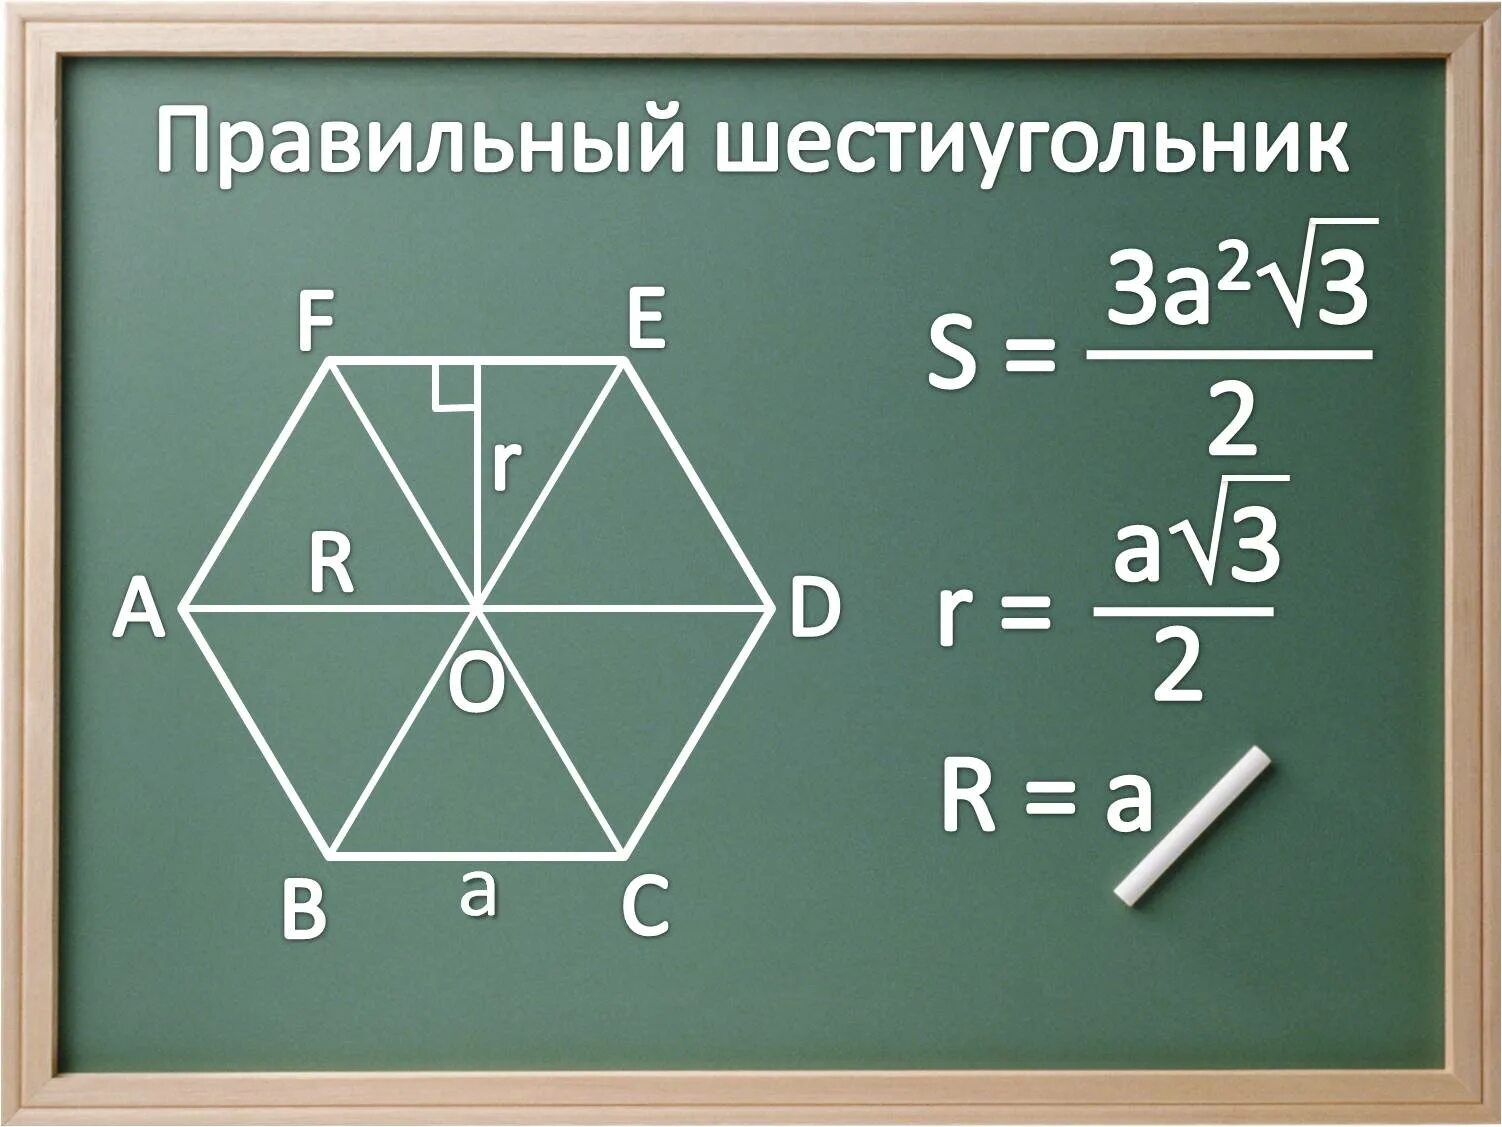 Площадь равностороннего шестиугольника. Площадь правильного шестиугольника. Площадь правильного шестиугольника формула. Площадь правильногтшестиугол Нмка.